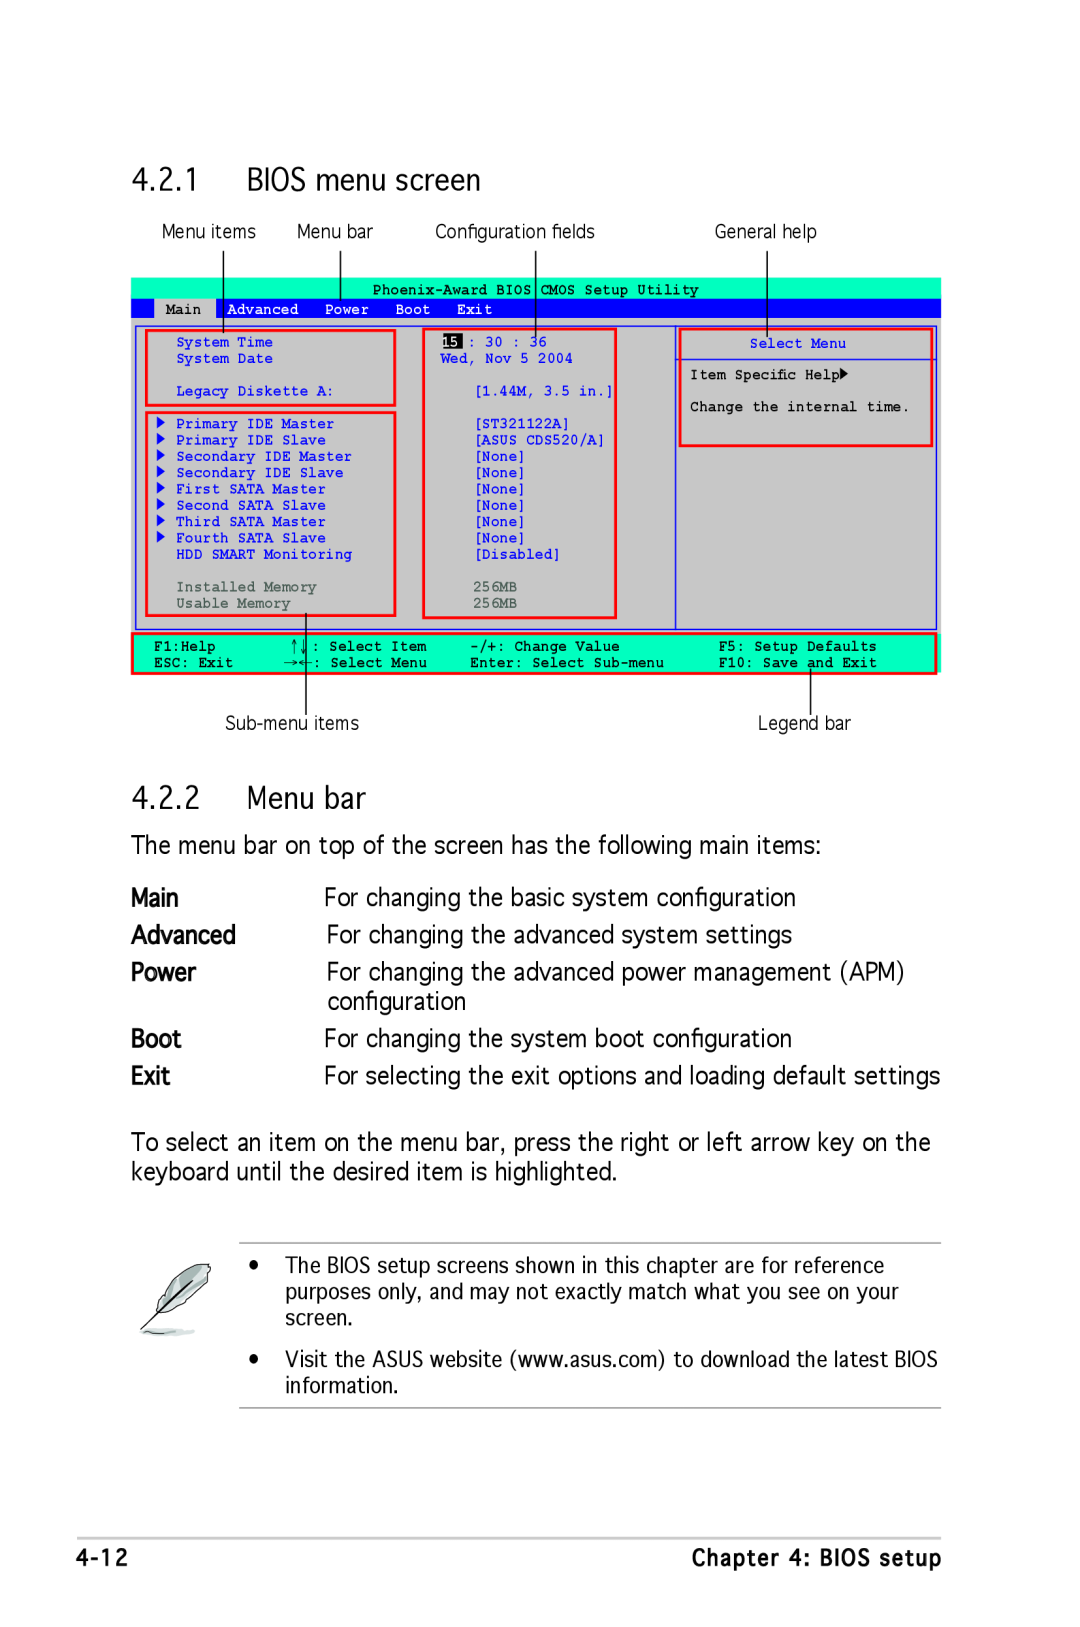 Asus A8N-SLI SE manual BIOS menu screen, Menu bar 